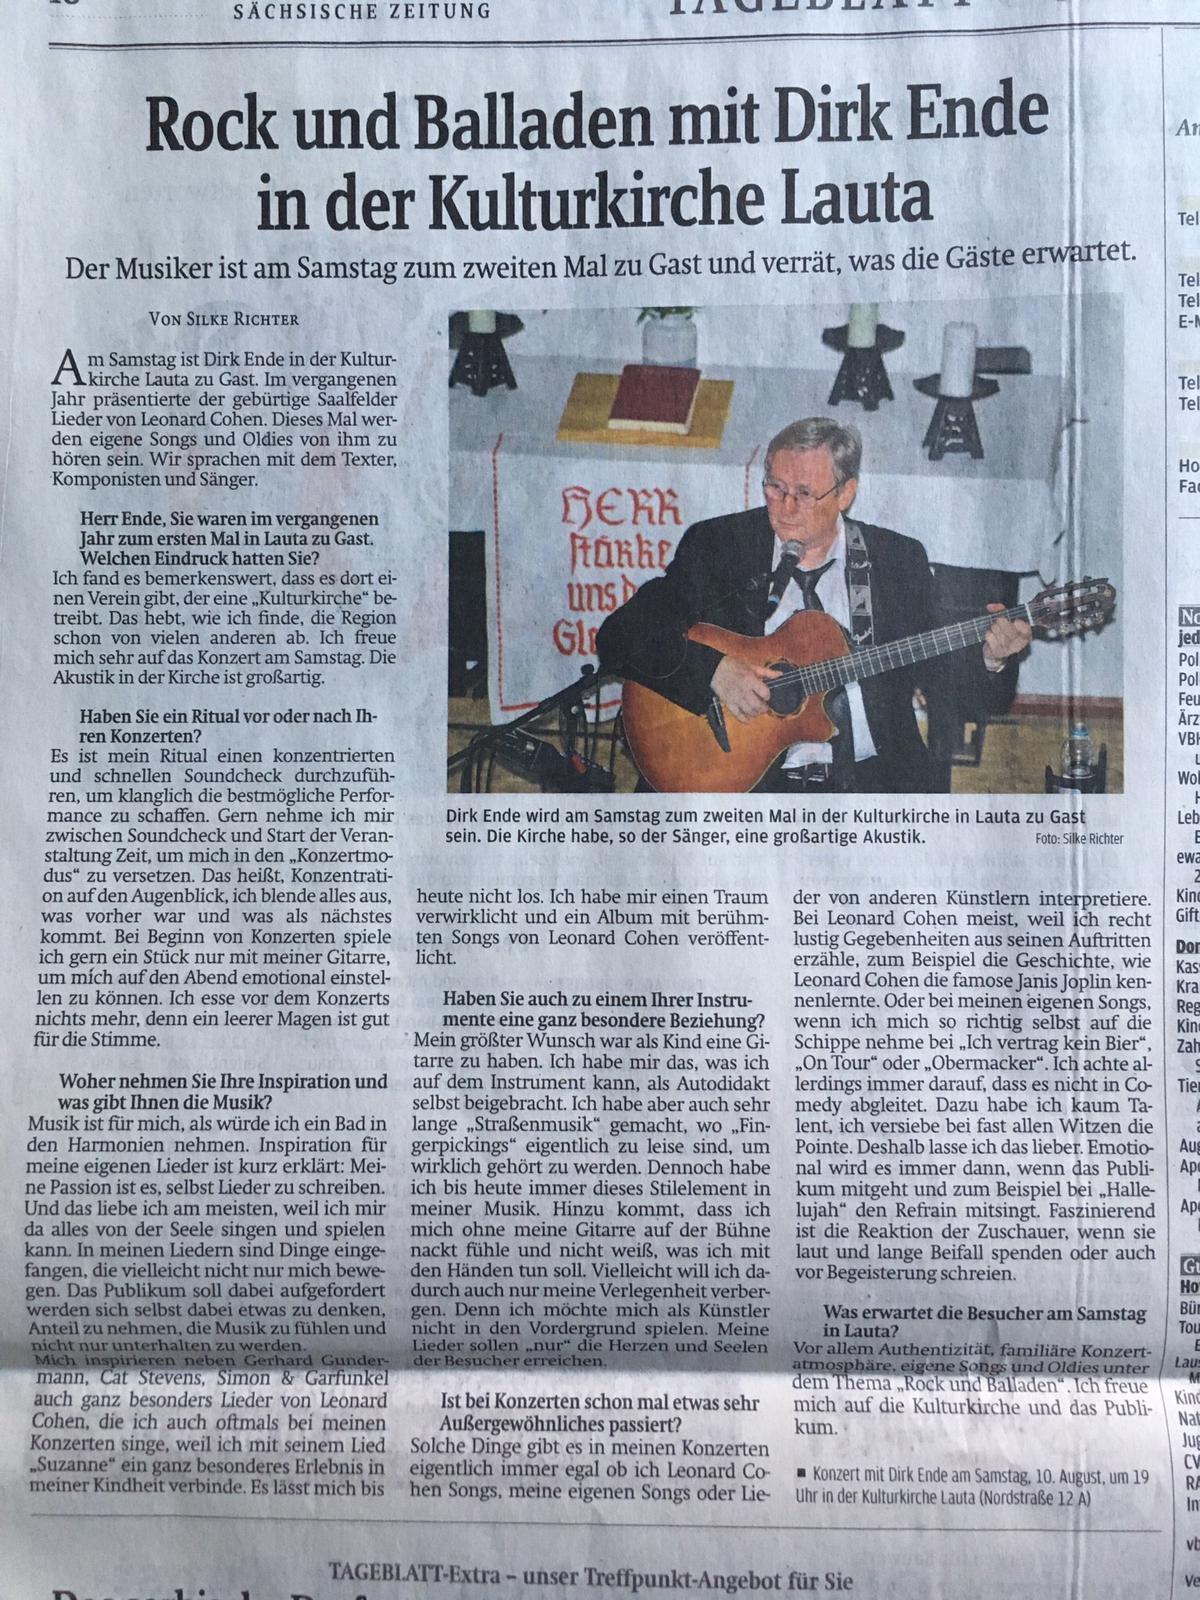 Dirk Ende Kulturkirche mit Rock, Balladen und mehr